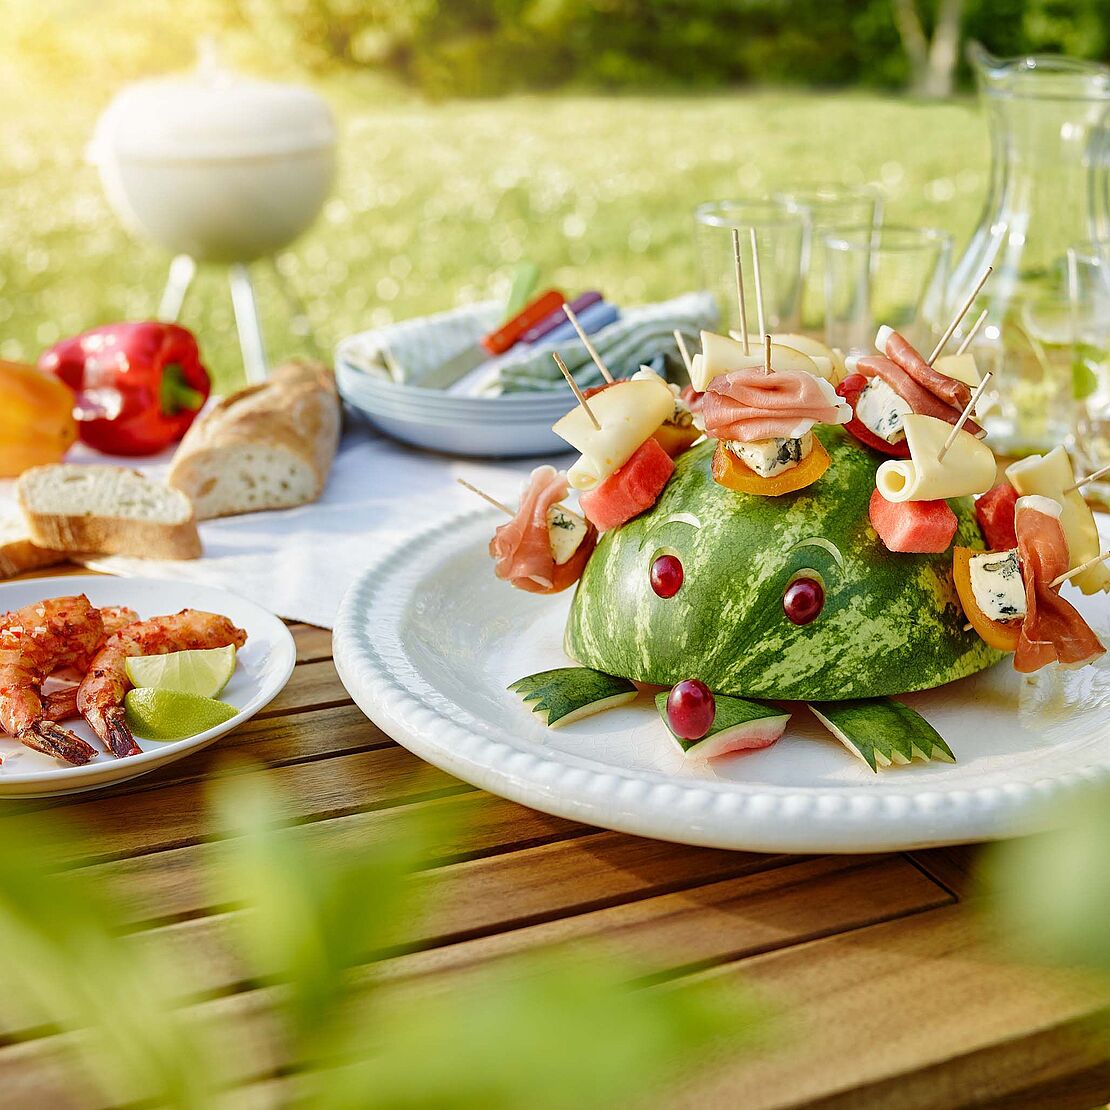 Käseigel Sunny mit Saint Agur, Fol Epi, Parmaschinken und Wassermelone bestückt sitzt auf einem Gartentisch